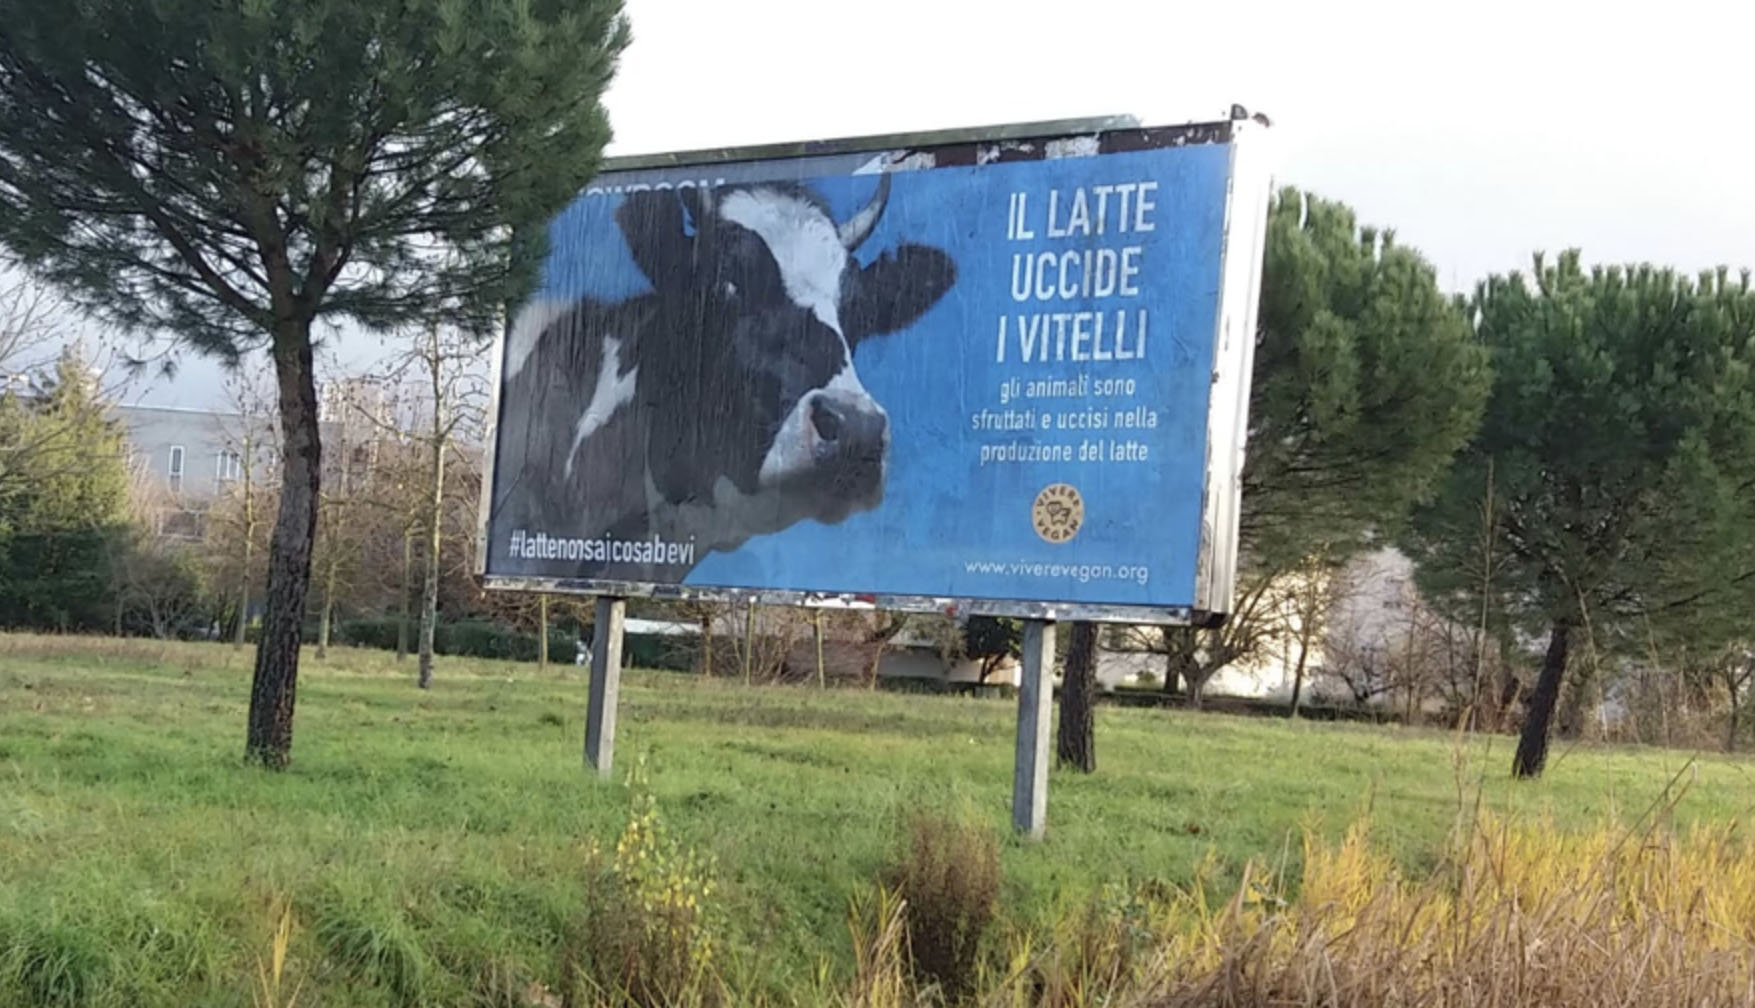 Arezzo: nuovo blitz di Progetto Vivere Vegan: questa volta il cartellone è su cosa comporta il consumo di latte